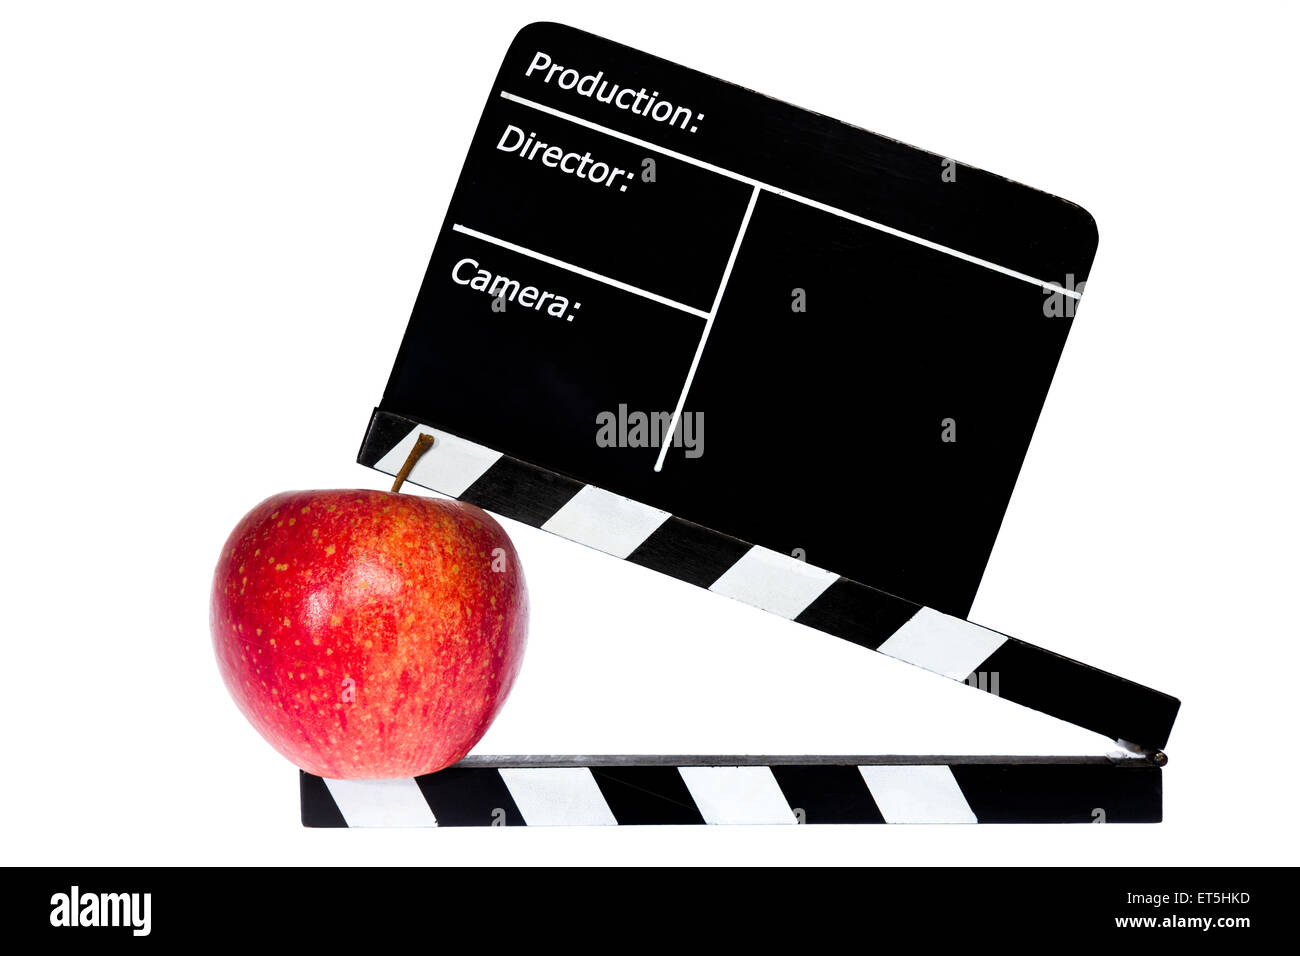 Manzana roja y tapa de película - fondo blanco Foto de stock